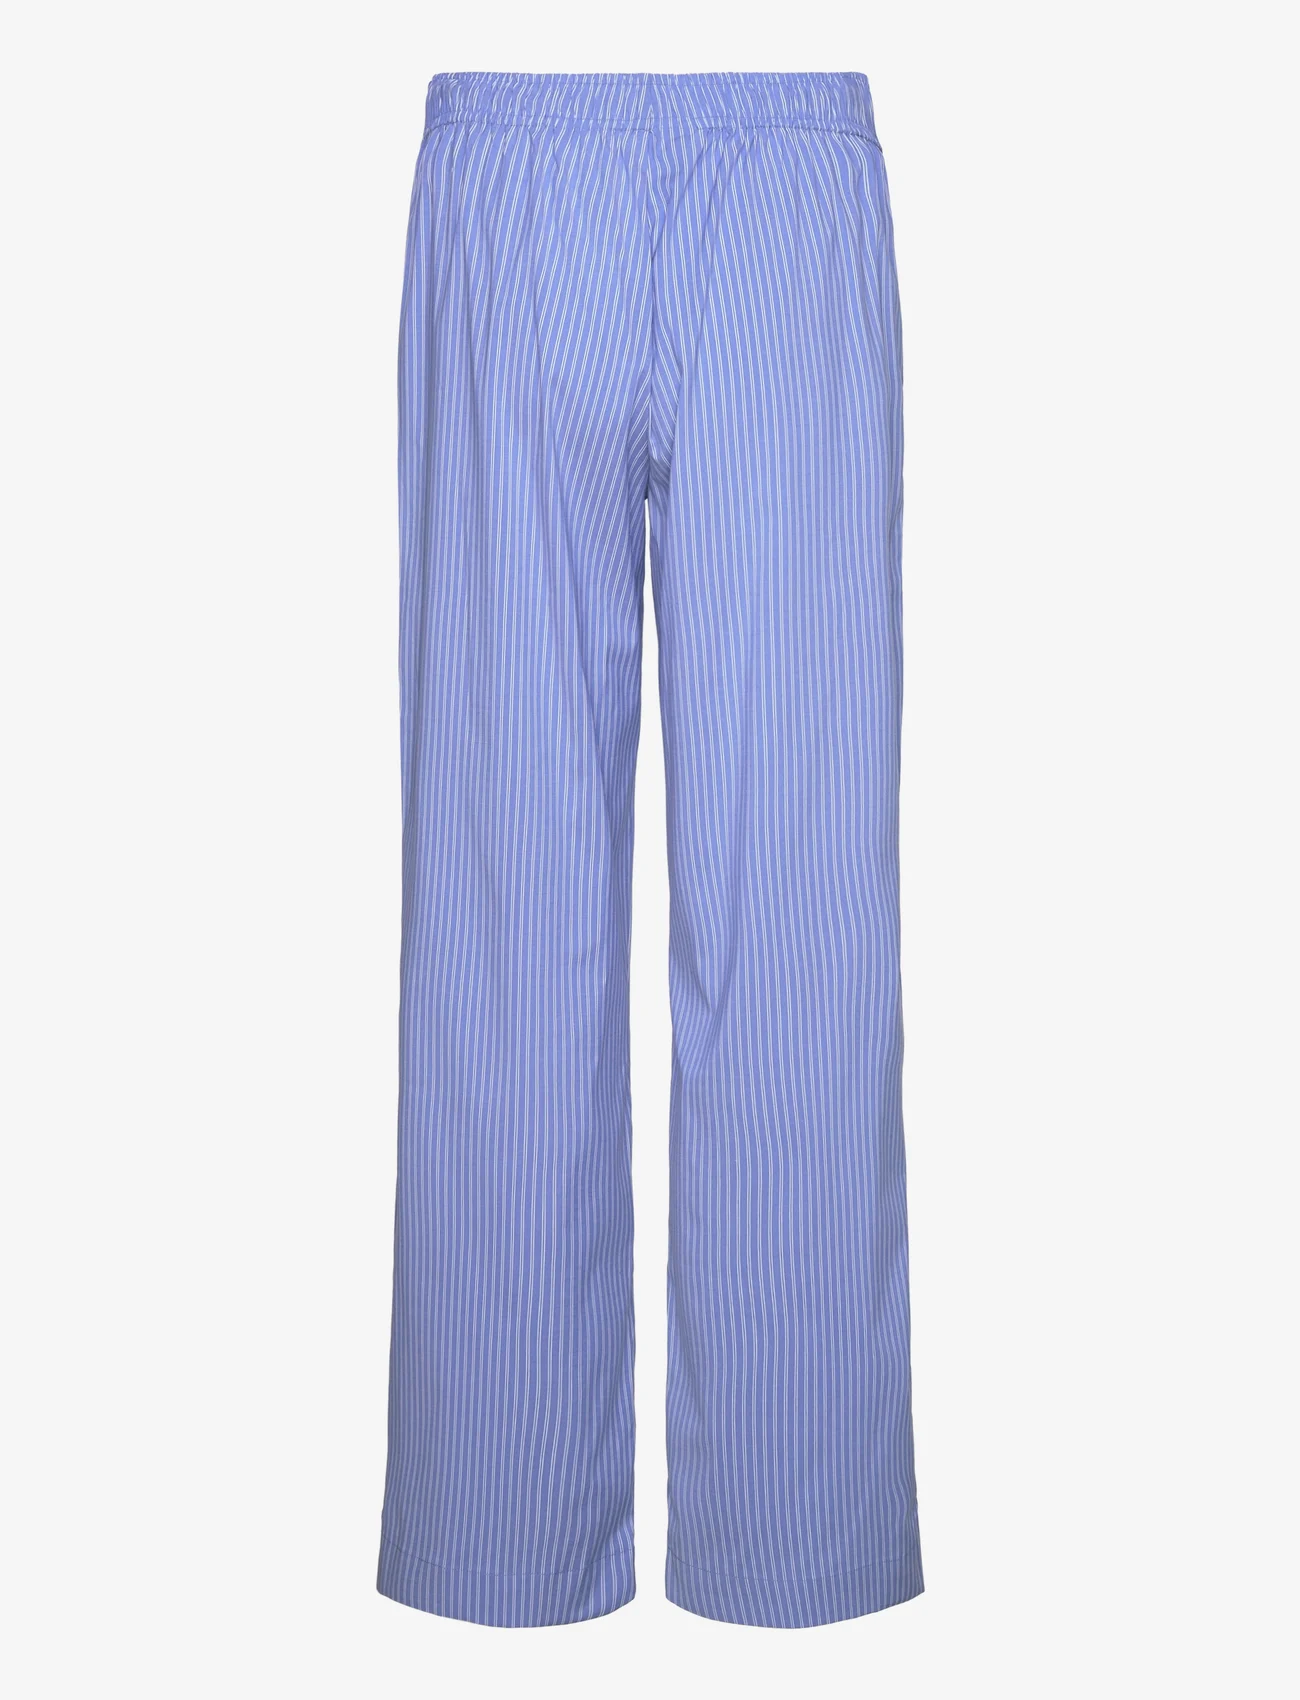 Sofie Schnoor - Trousers - hosen mit weitem bein - blue striped - 1